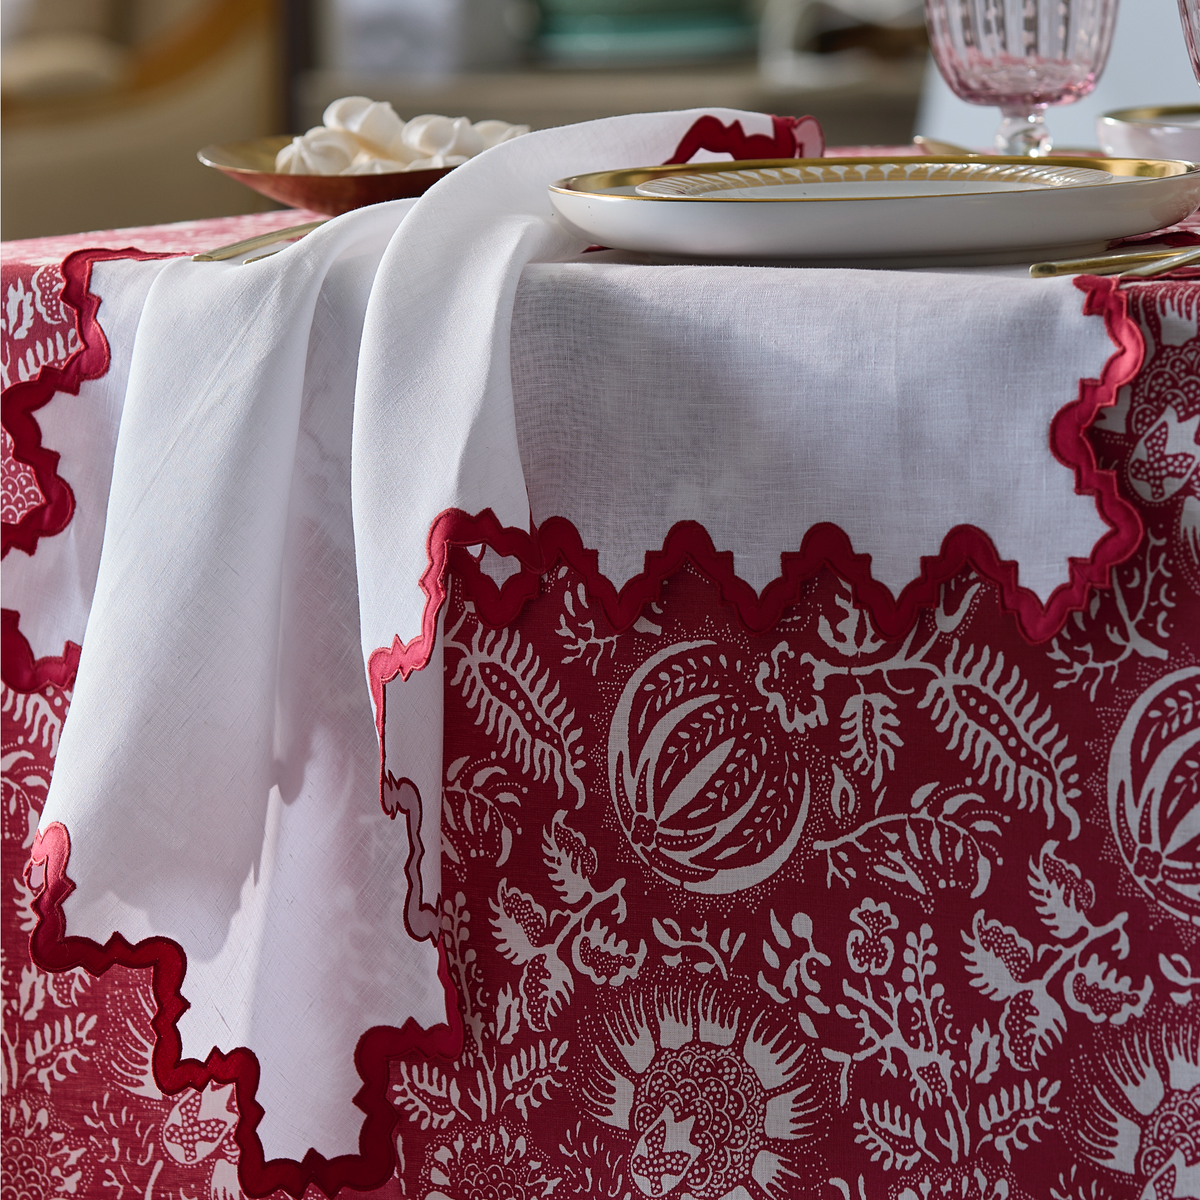 Detail of Matouk Granada Table Napkin in Scarlet Color